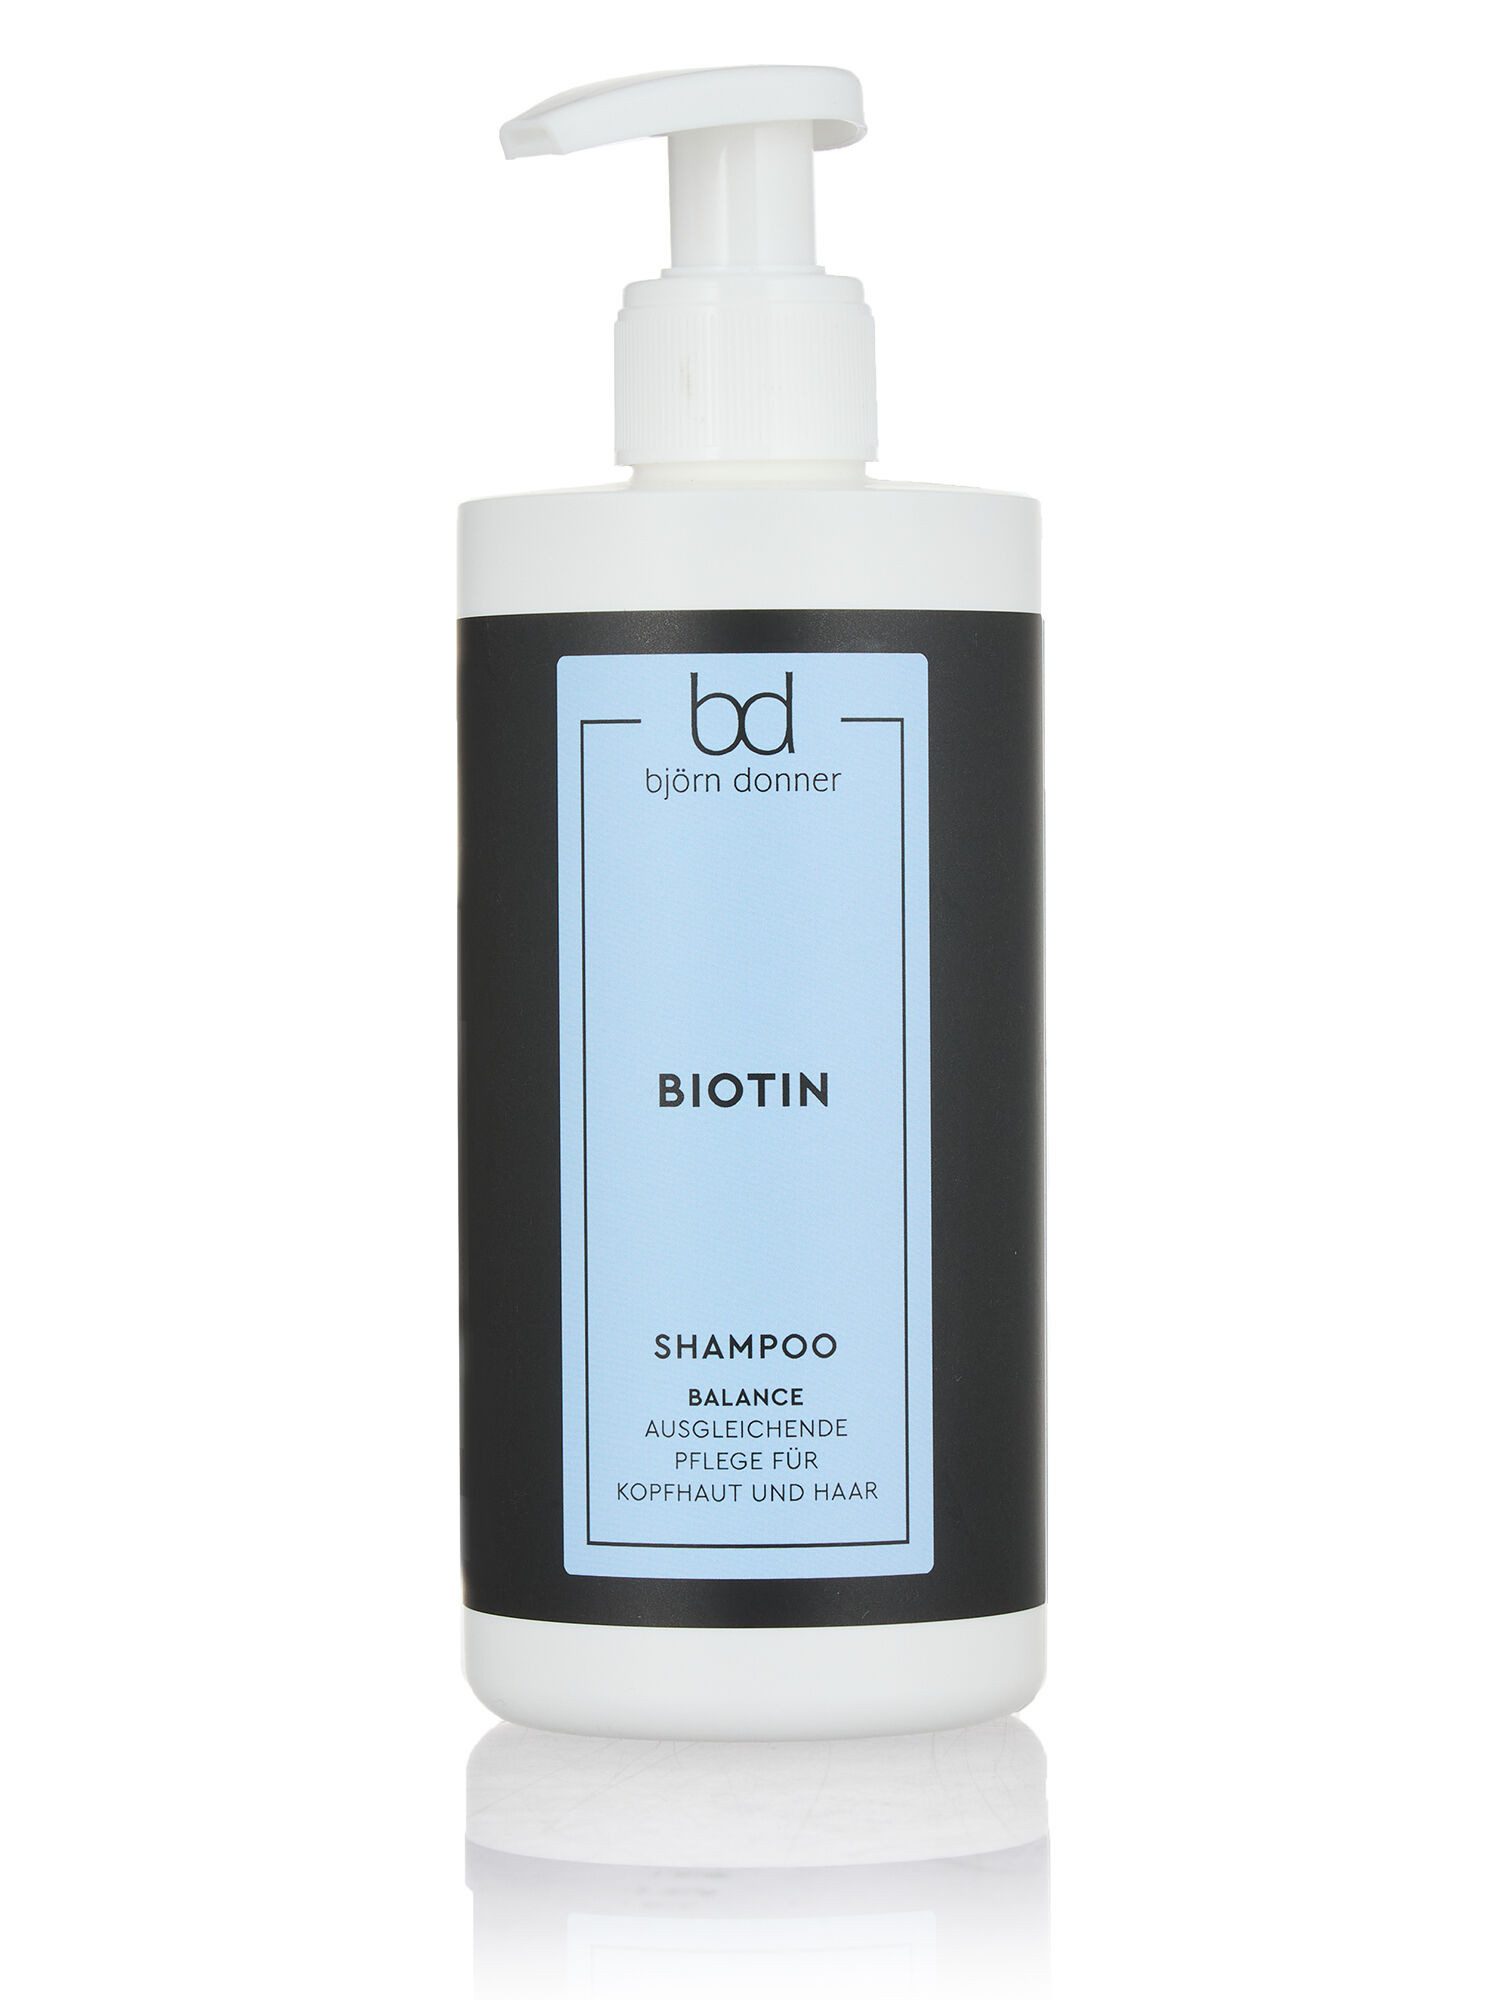 Björn Donner Haarshampoo Biotin Balance Shampoo, 1-tlg., für kräftiges, festes und glänzendes Haar